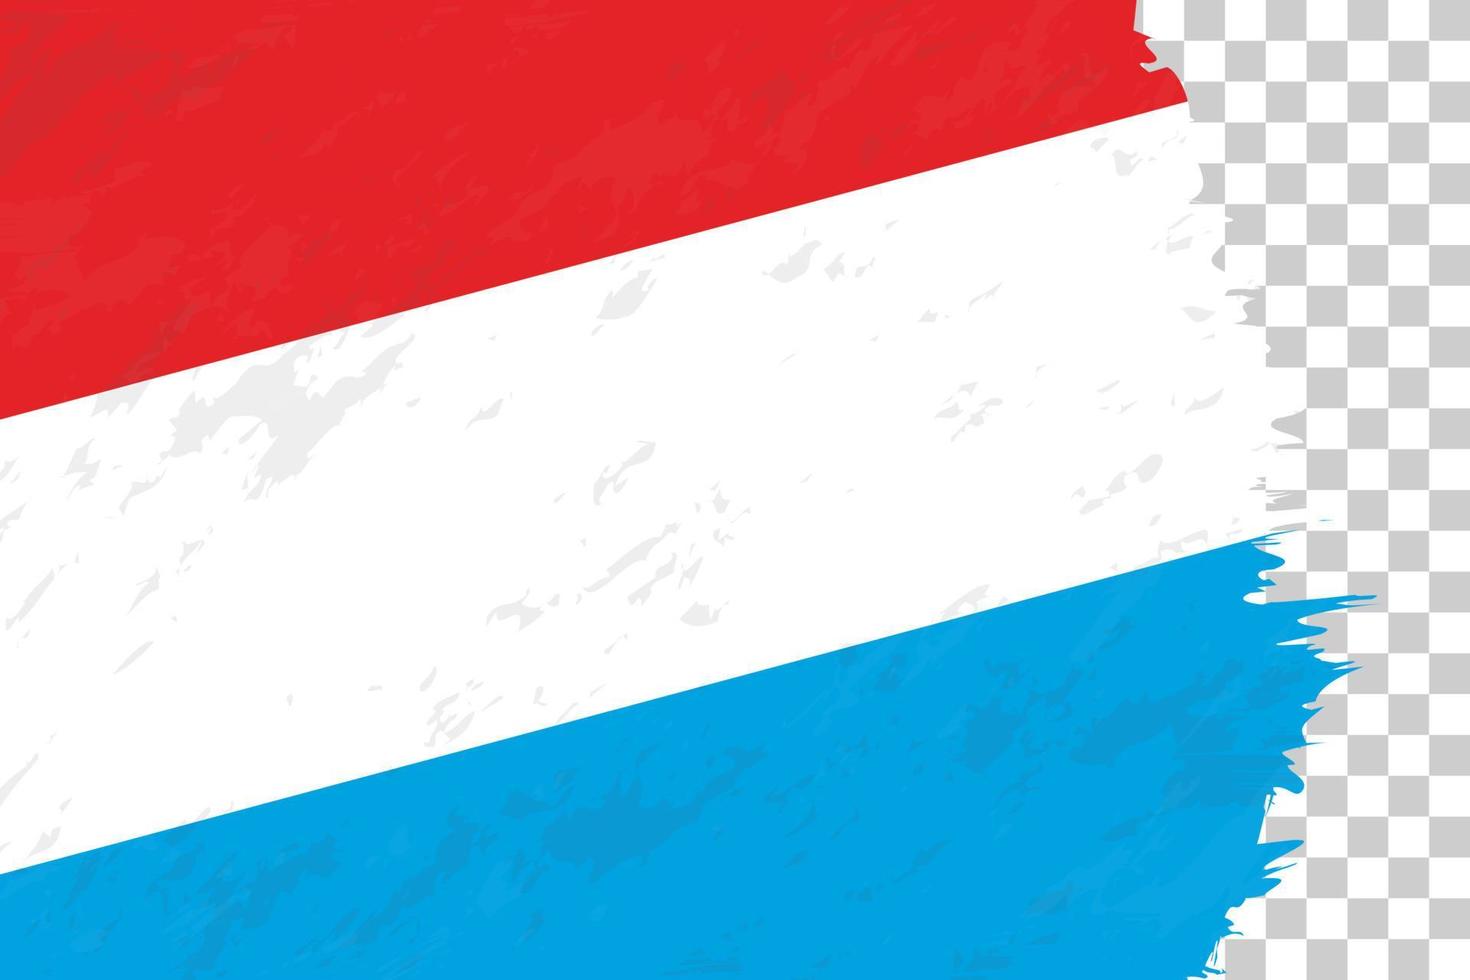 grunge abstrait horizontal brossé drapeau du luxembourg sur une grille transparente. vecteur